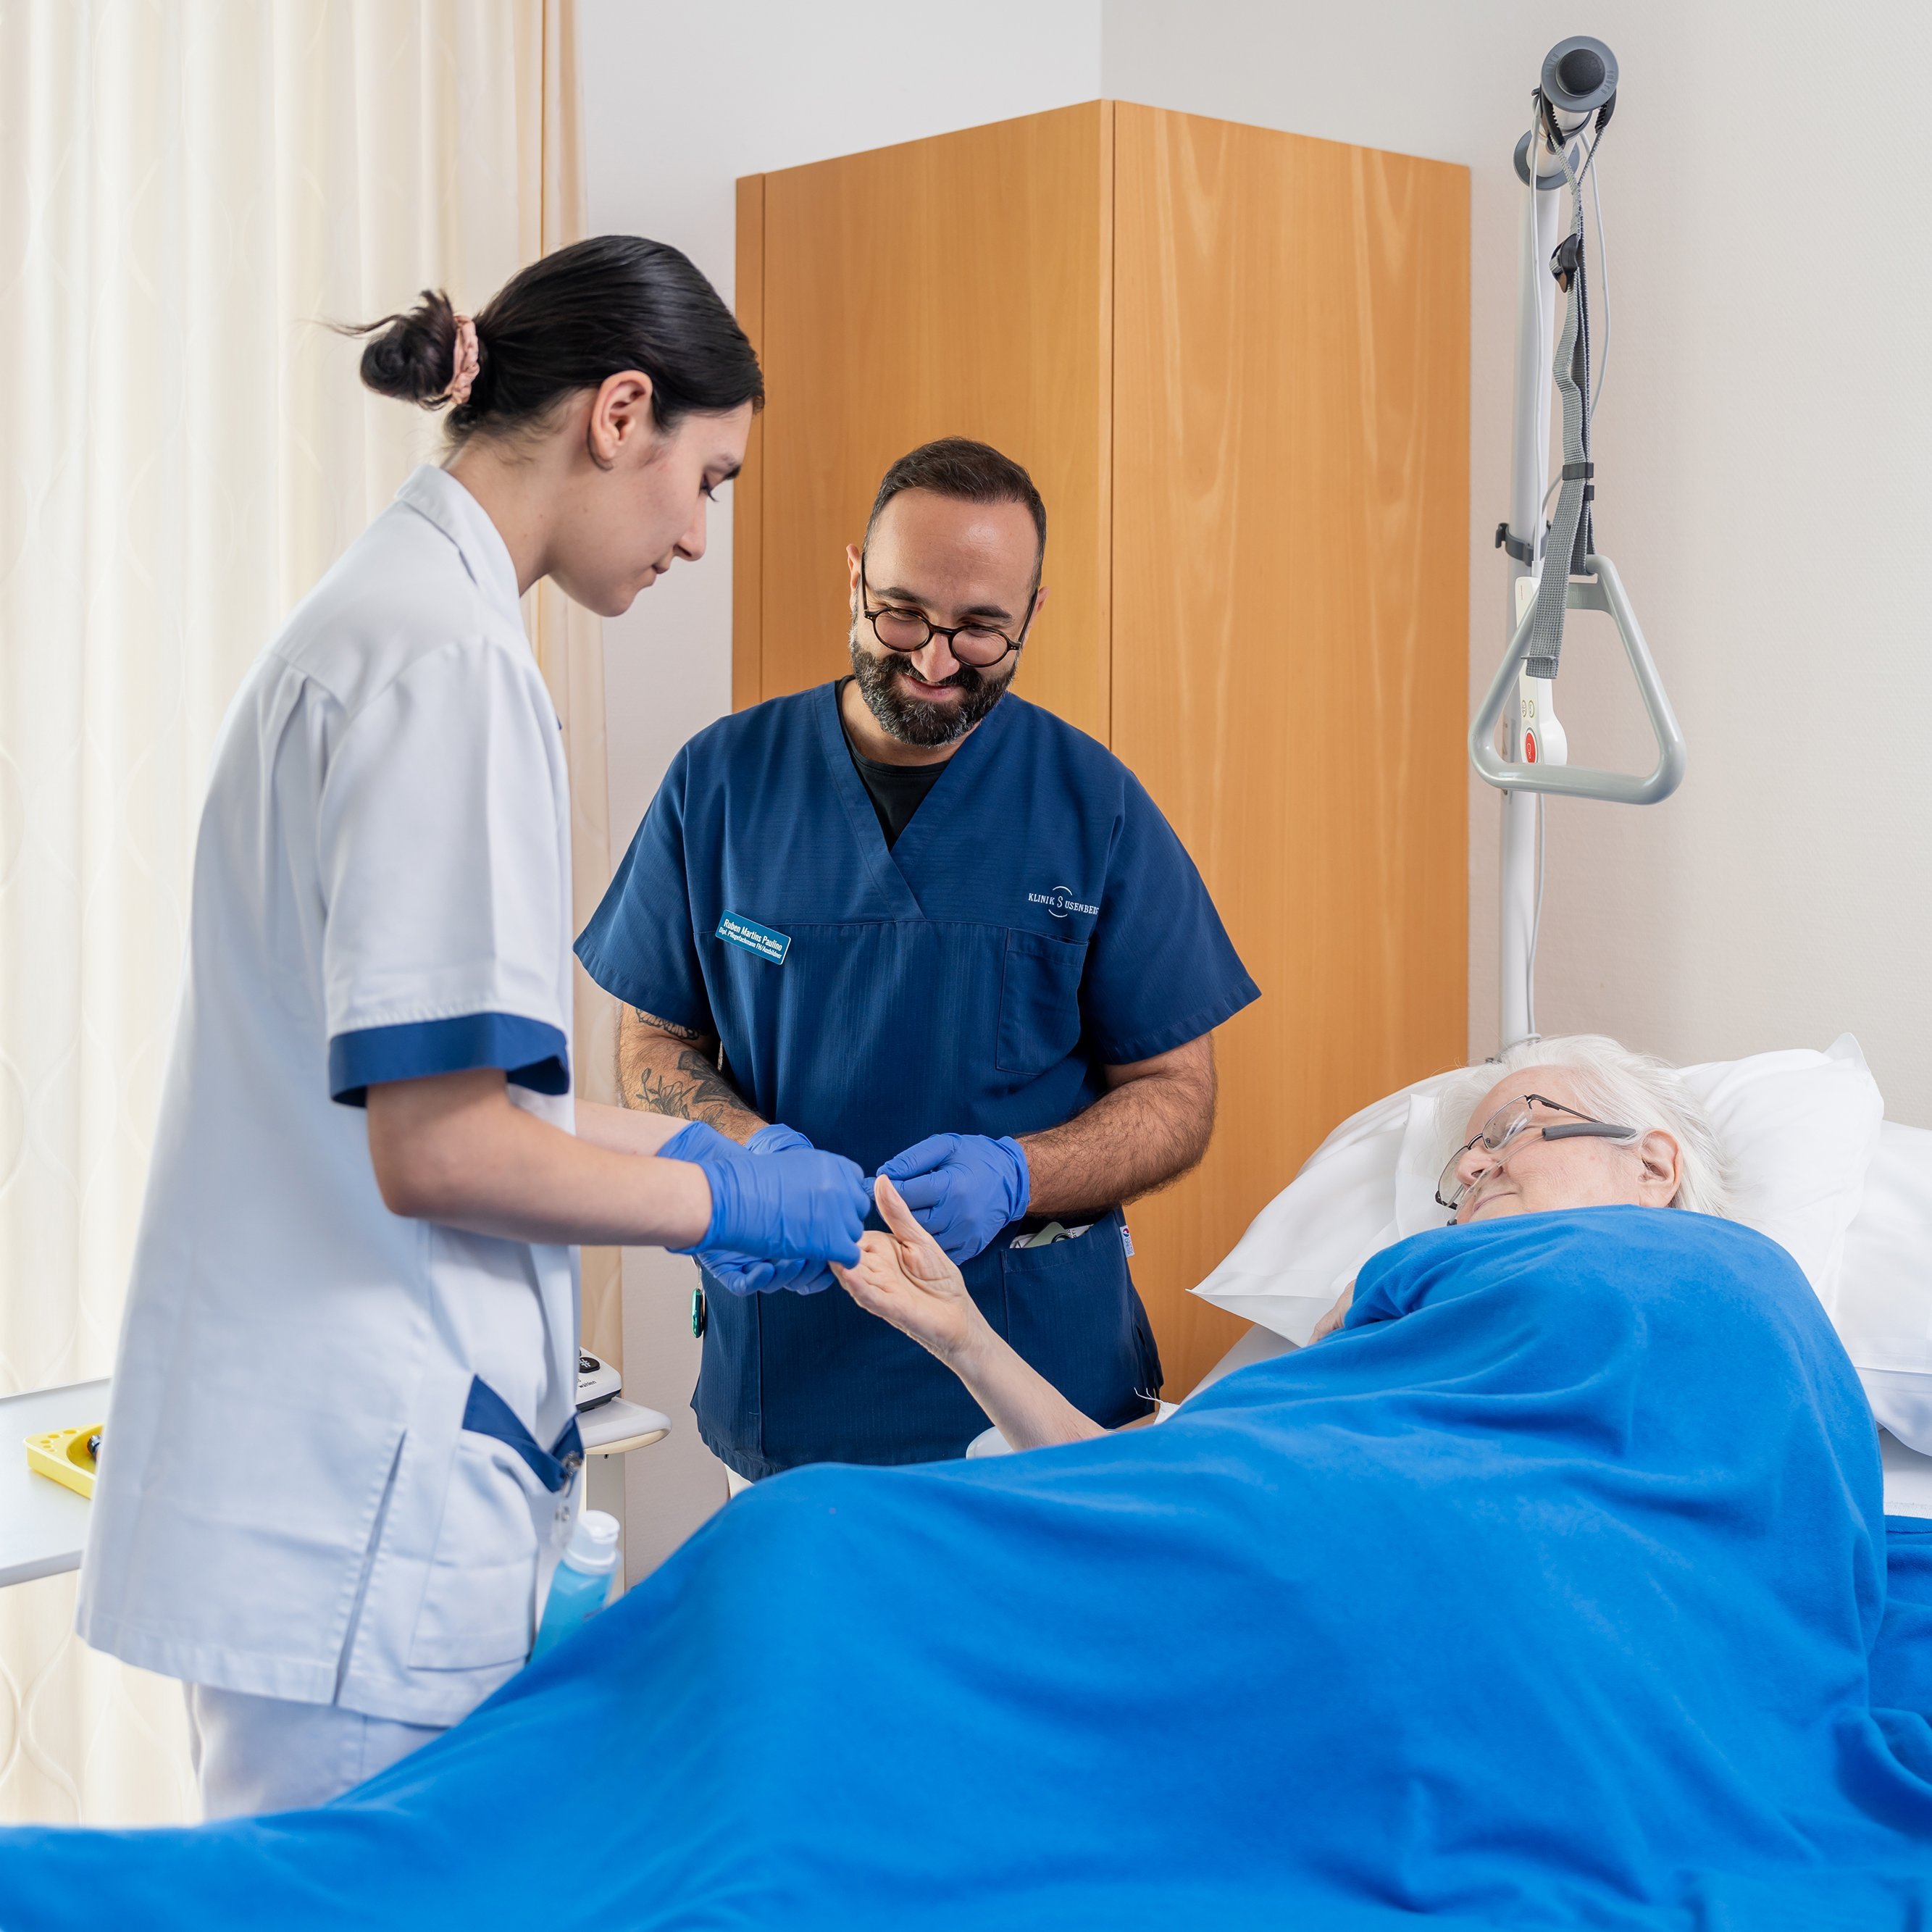 Klinik Susenberg: Pflege am Bett der Patientin